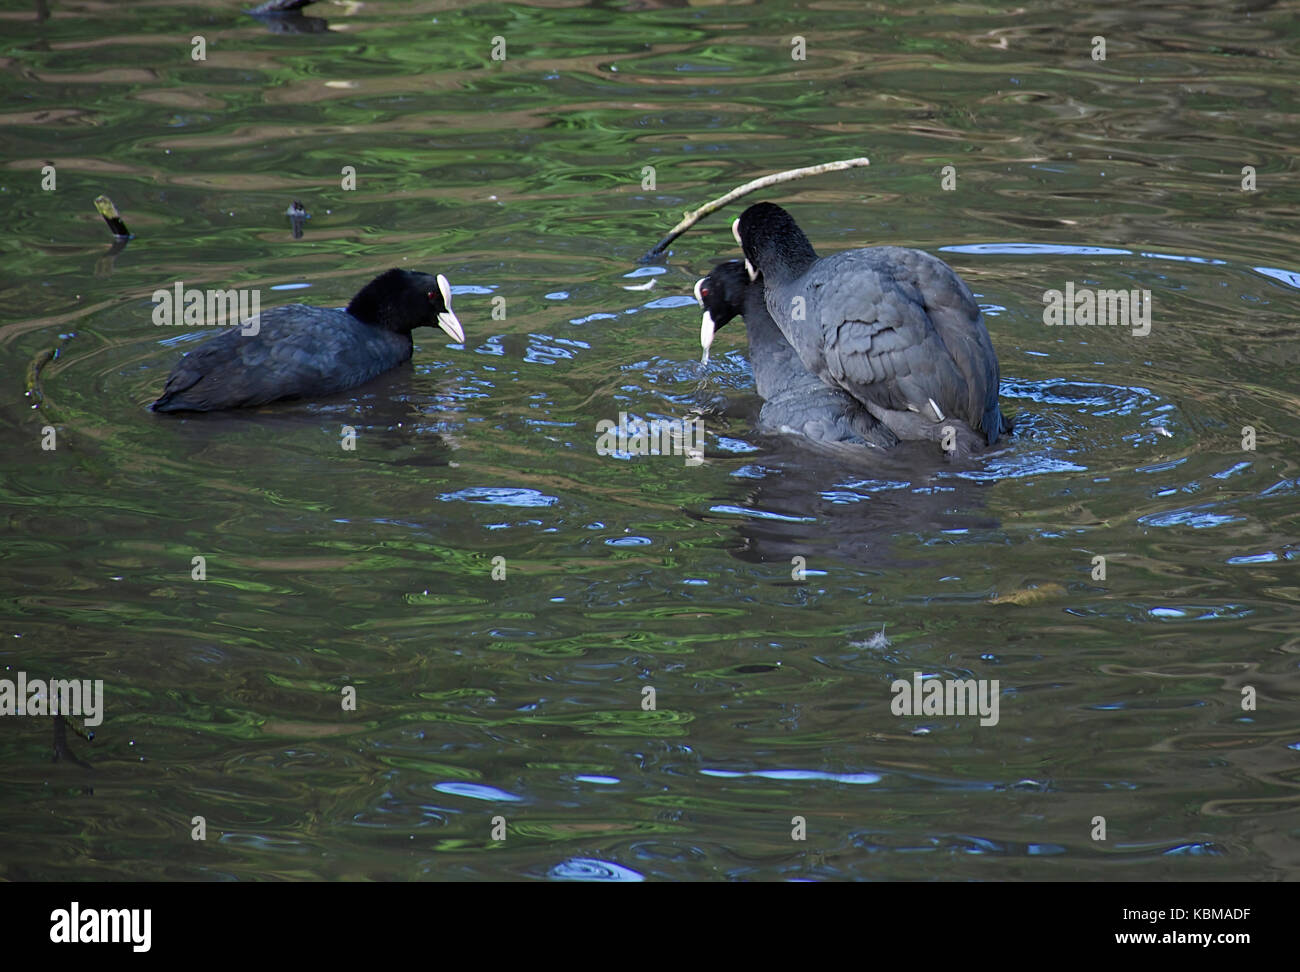 L'accoppiamento folaghe in Westport lago riserva naturale vicino a Stoke on Trent, Regno Unito.il comportamento degli uccelli. Foto Stock